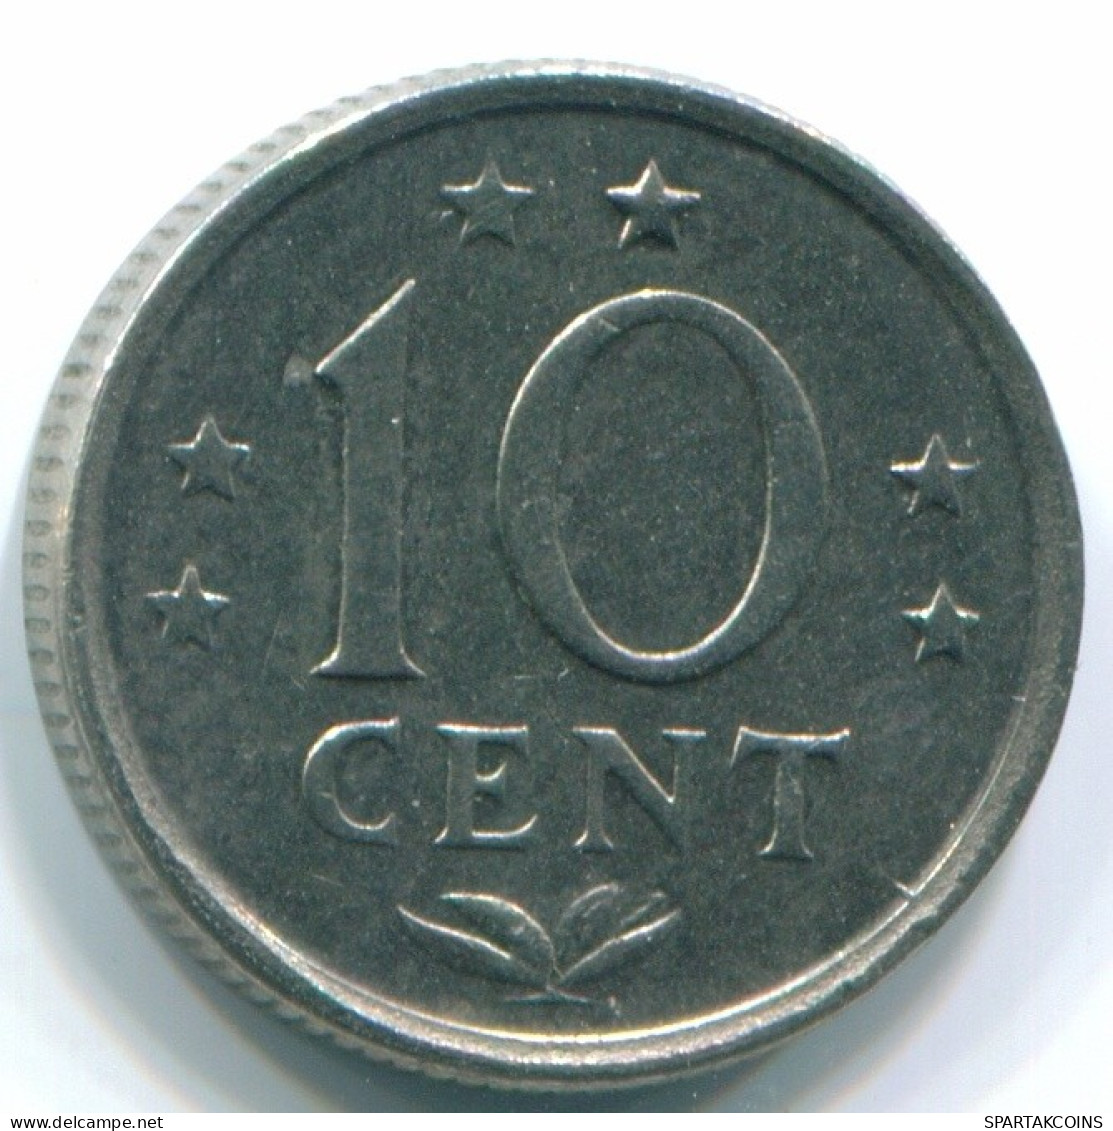 10 CENTS 1970 NIEDERLÄNDISCHE ANTILLEN Nickel Koloniale Münze #S13341.D.A - Antillas Neerlandesas